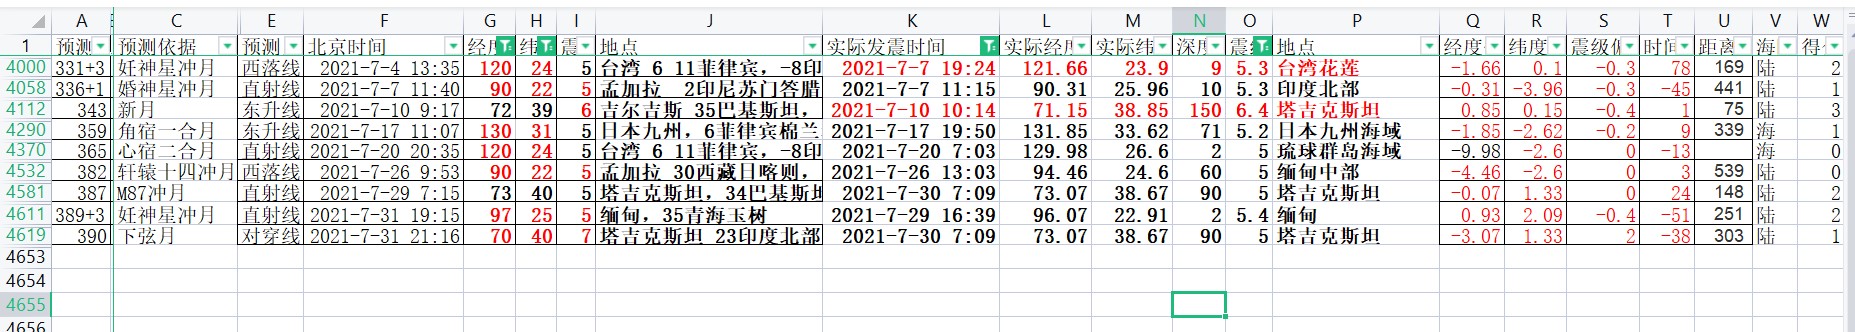 2021年7月中国及周边5级以上地震预测偏差验证.jpg